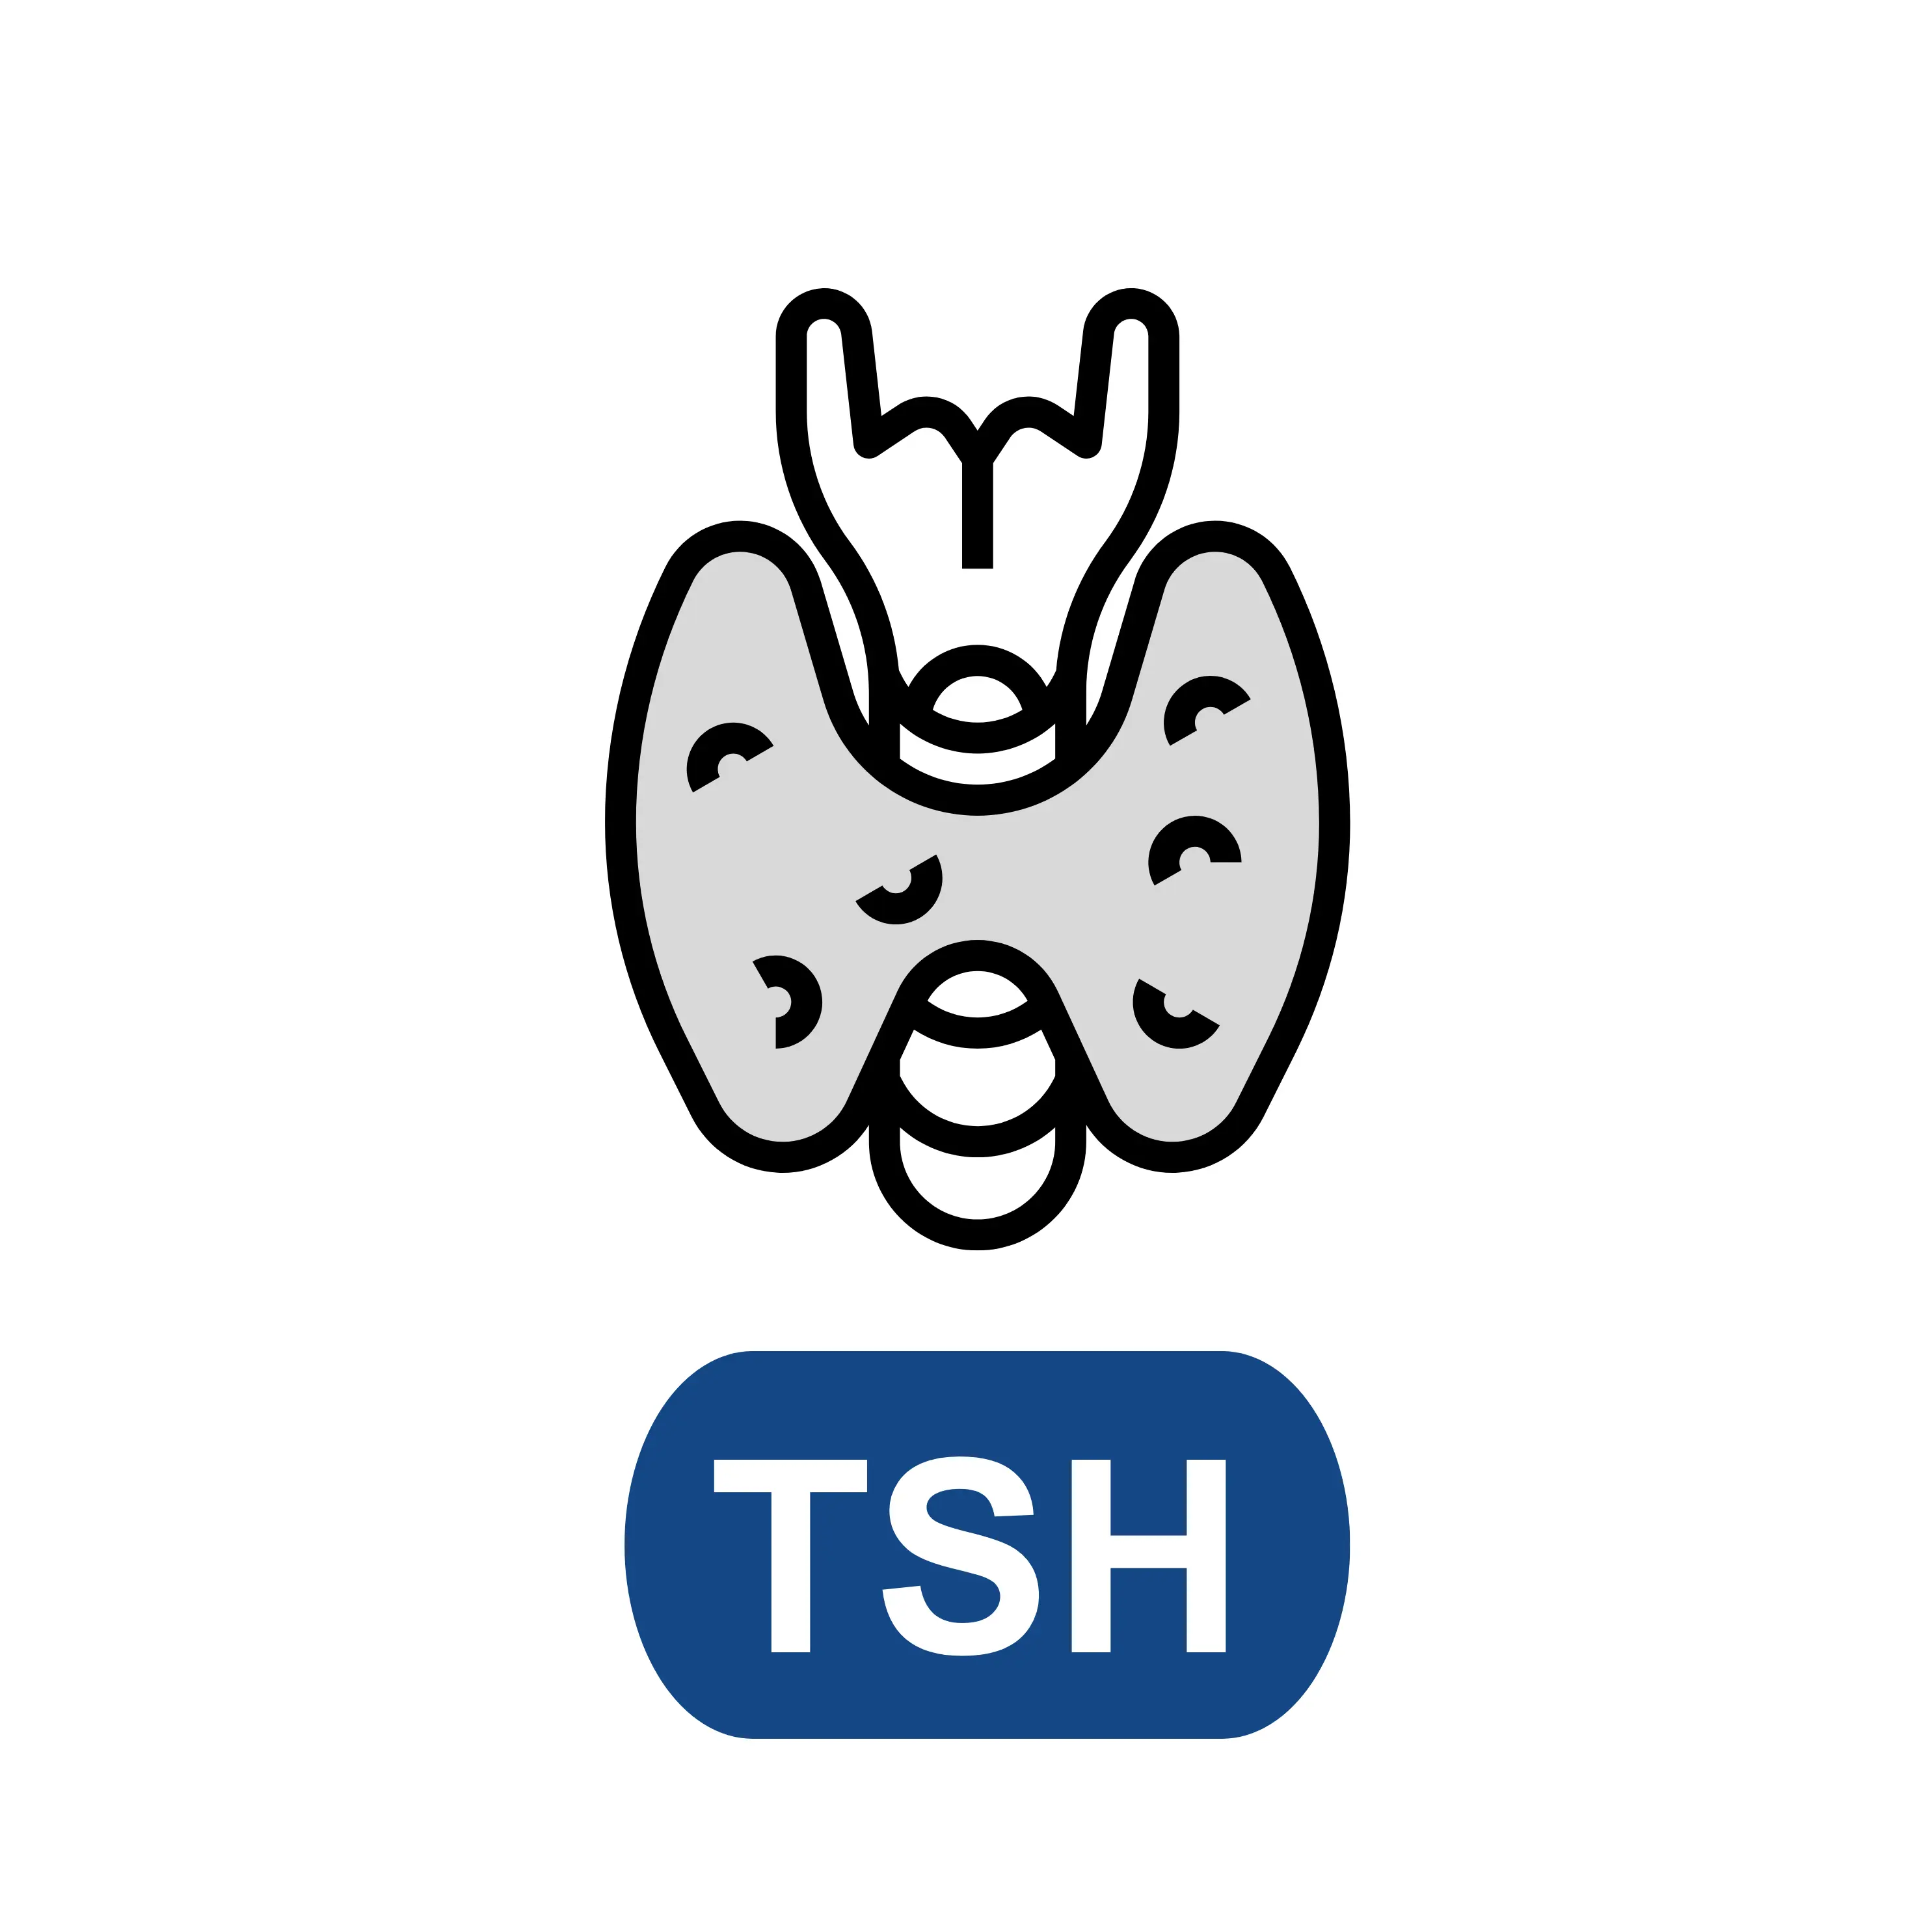 Thyroid Stimulating Hormone(TSH)